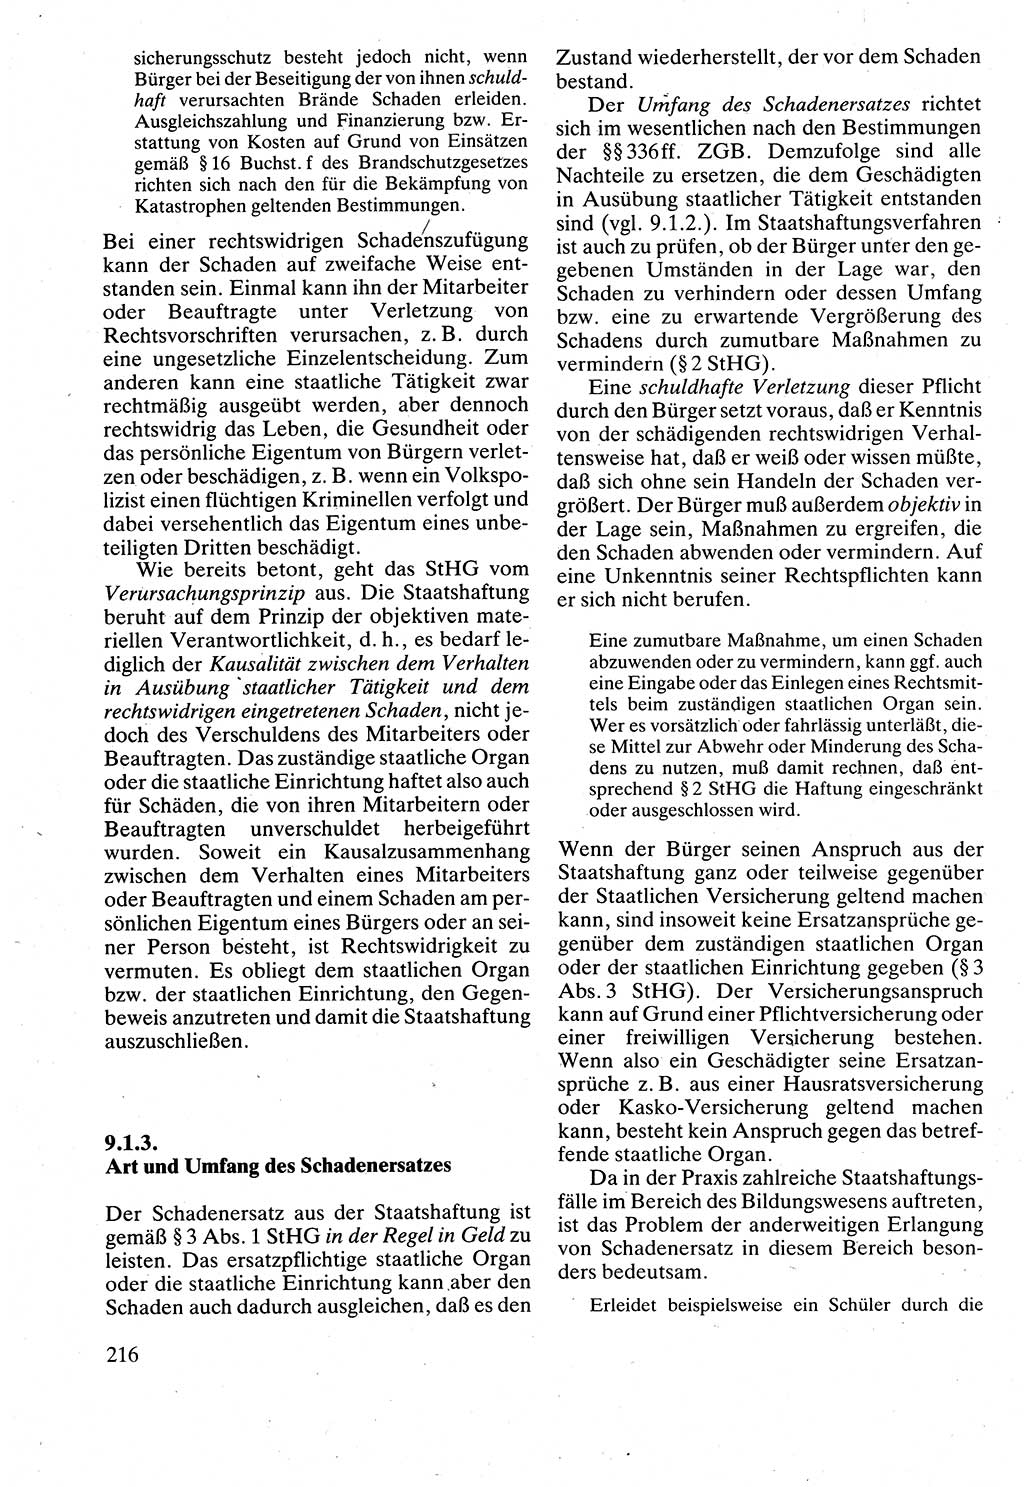 Verwaltungsrecht [Deutsche Demokratische Republik (DDR)], Lehrbuch 1988, Seite 216 (Verw.-R. DDR Lb. 1988, S. 216)